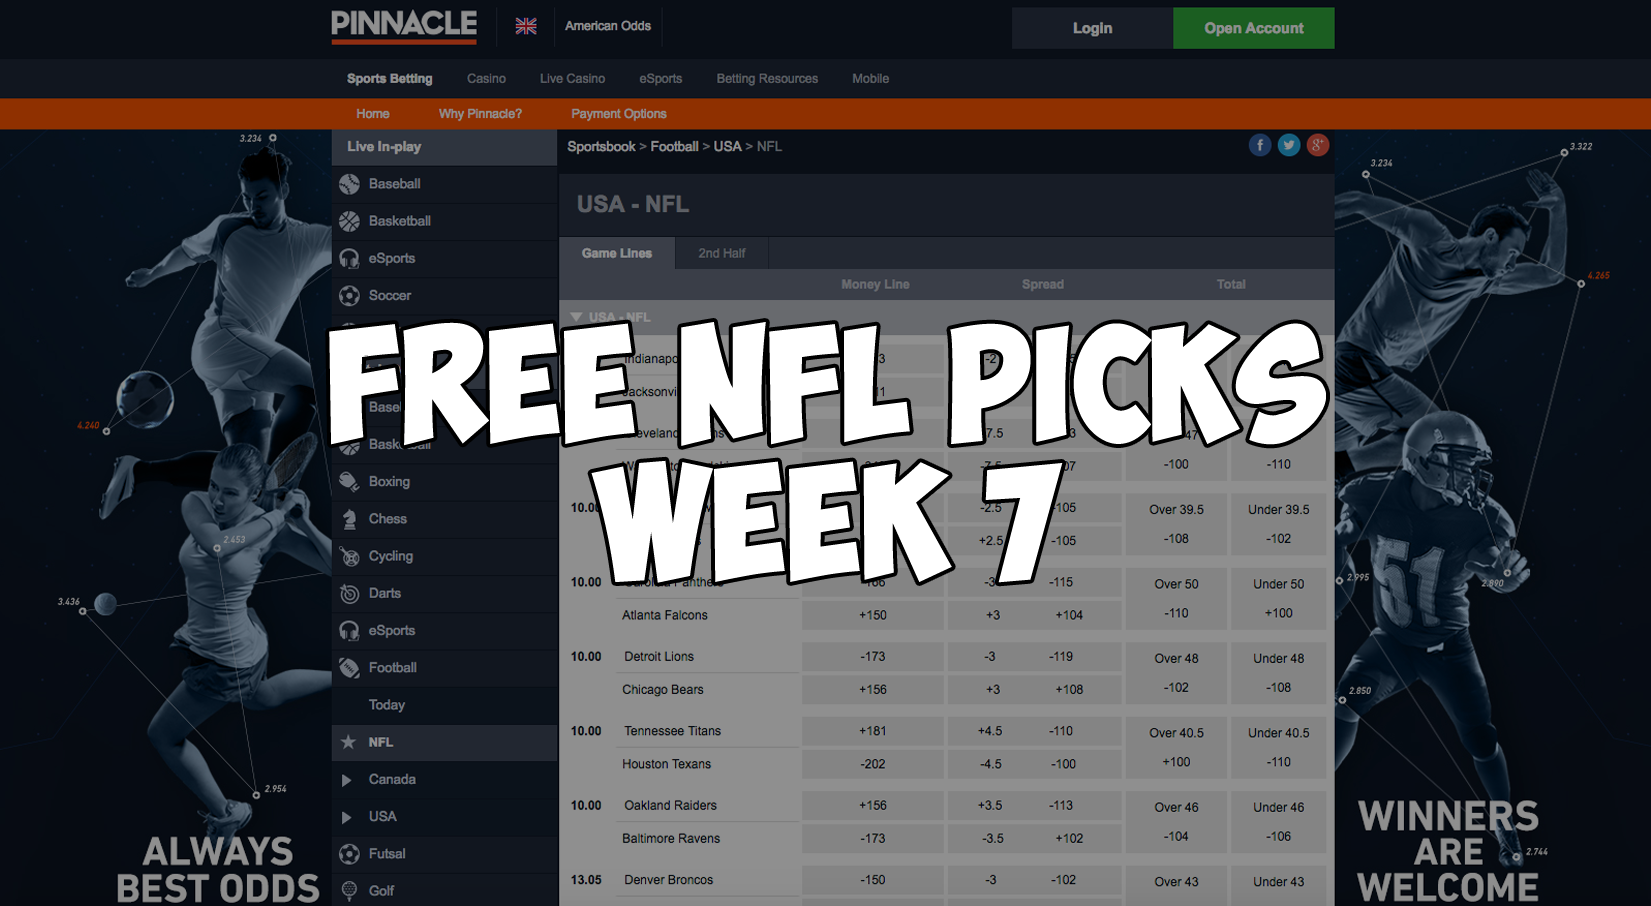 Free NFL Picks Week 7 - American Betting Site | American ...